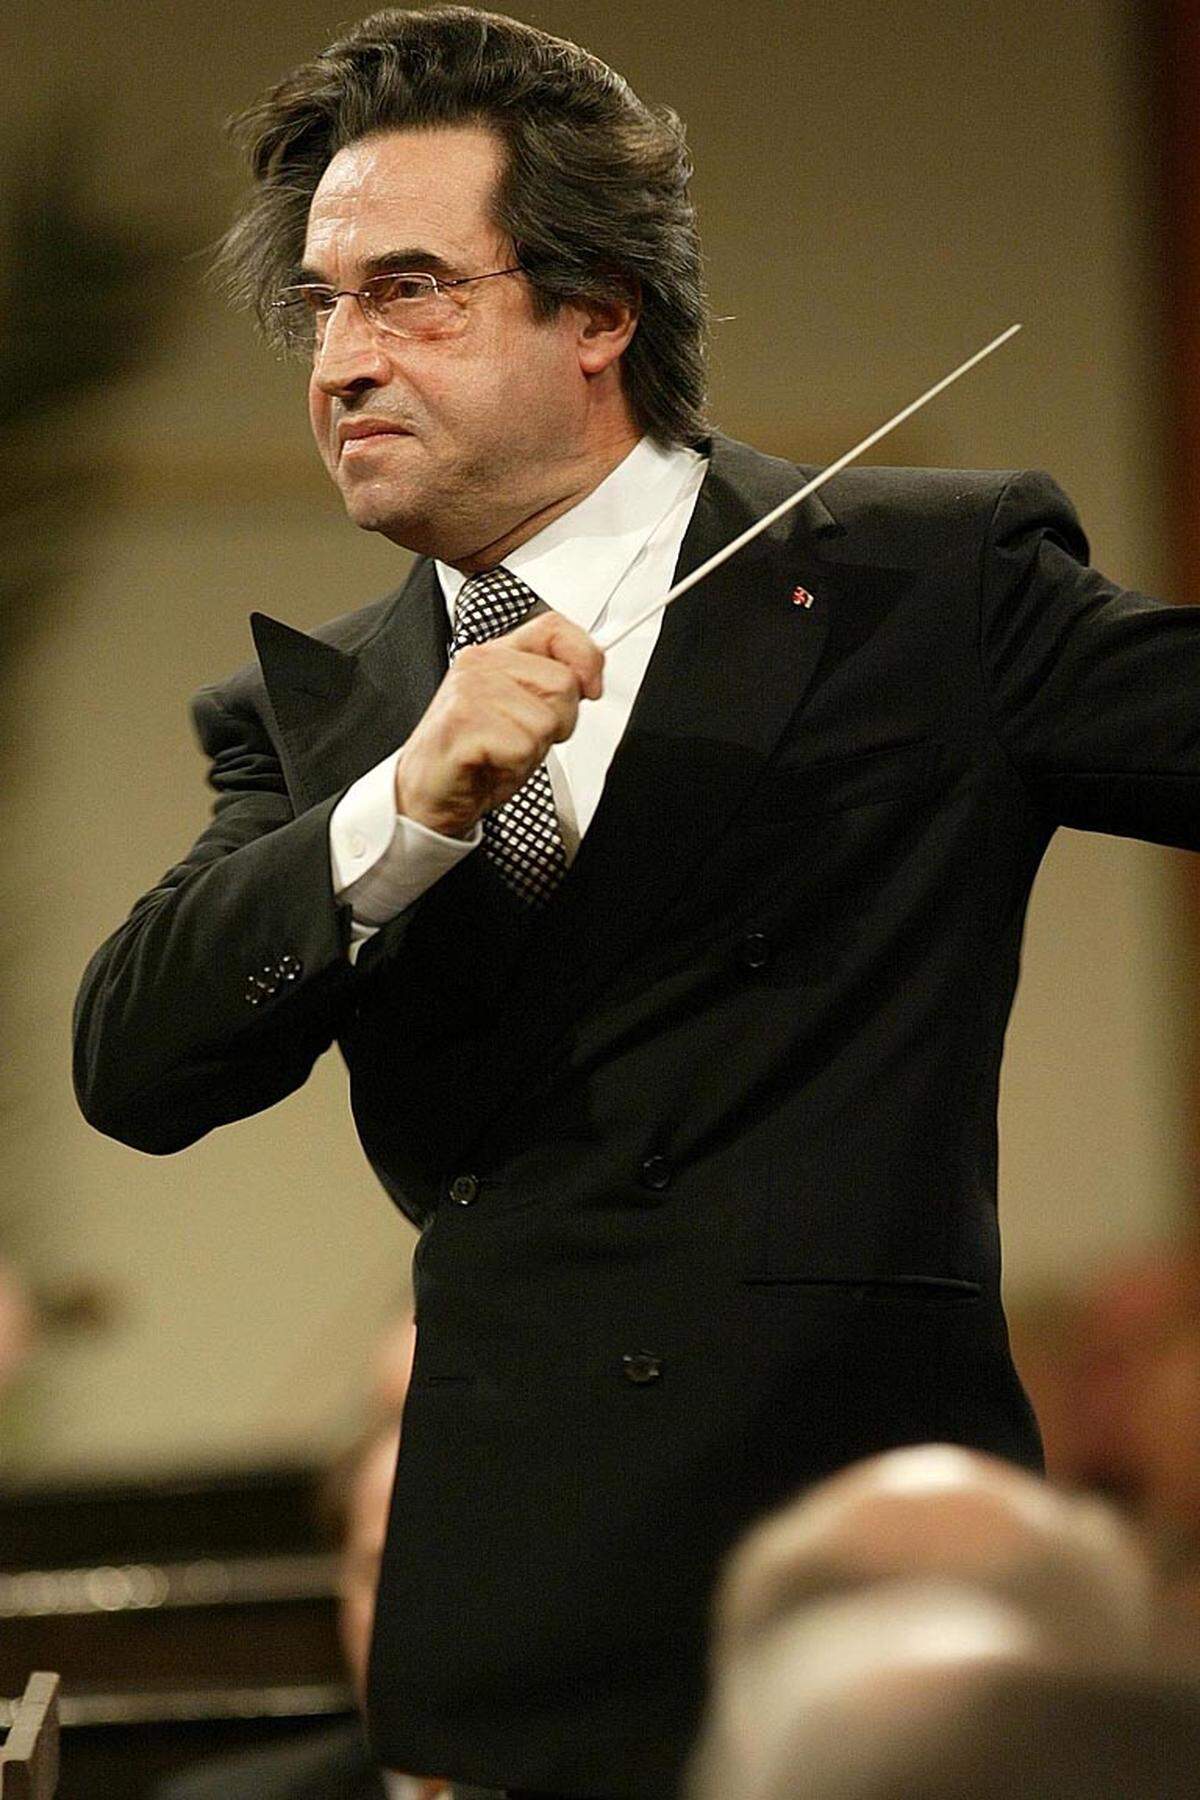 Seit Herbert von Karajan hat kein anderer Dirigent so gebieterische Miene gemacht wie Riccardo Muti. Seine musikalische Kompromisslosigkeit scheint ihm schon äußerlich anzusehen sein: Energisch hebt er das Kinn in die Höhe und wirft die Haare in den Nacken. Gesundheitliche Probleme haben den 69-Jährigen nun aus der Bahn geworfen.